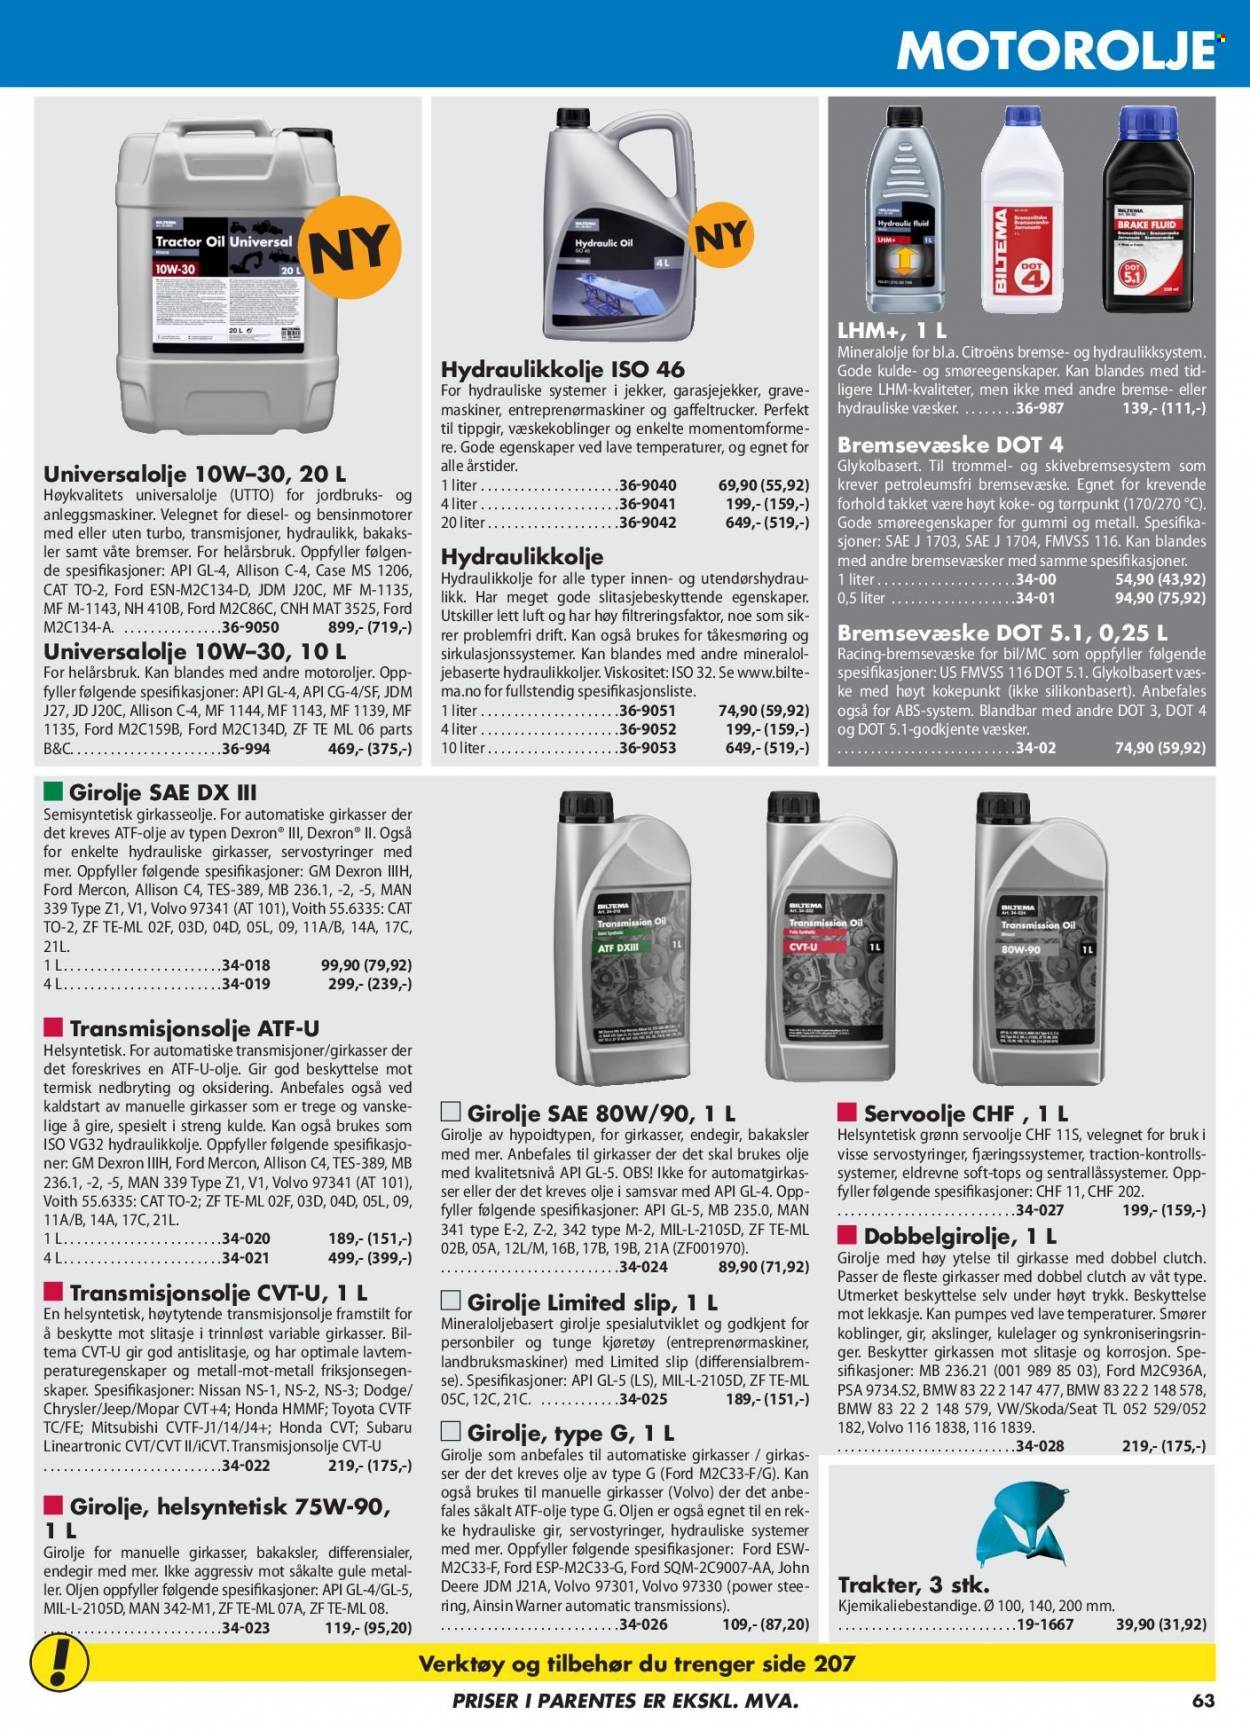 thumbnail - Kundeavis Biltema - Produkter fra tilbudsaviser - verktøy, motorolje. Side 63.